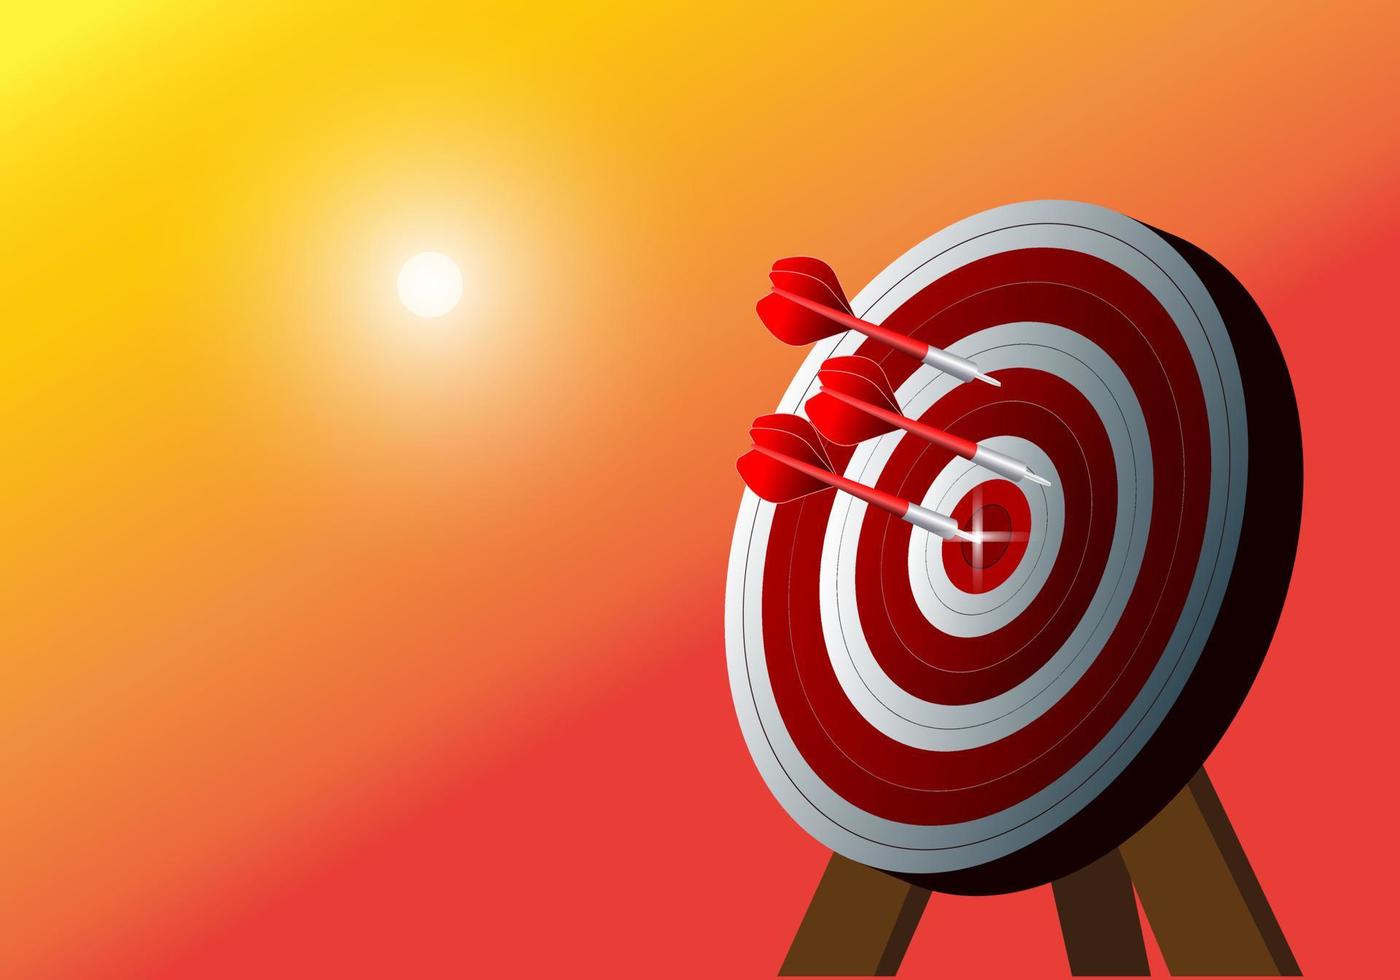 bullseye är ett affärsmål. dart är en möjlighet och darttavla är ett mål och ett mål, ett affärsutmaningskoncept. vektor